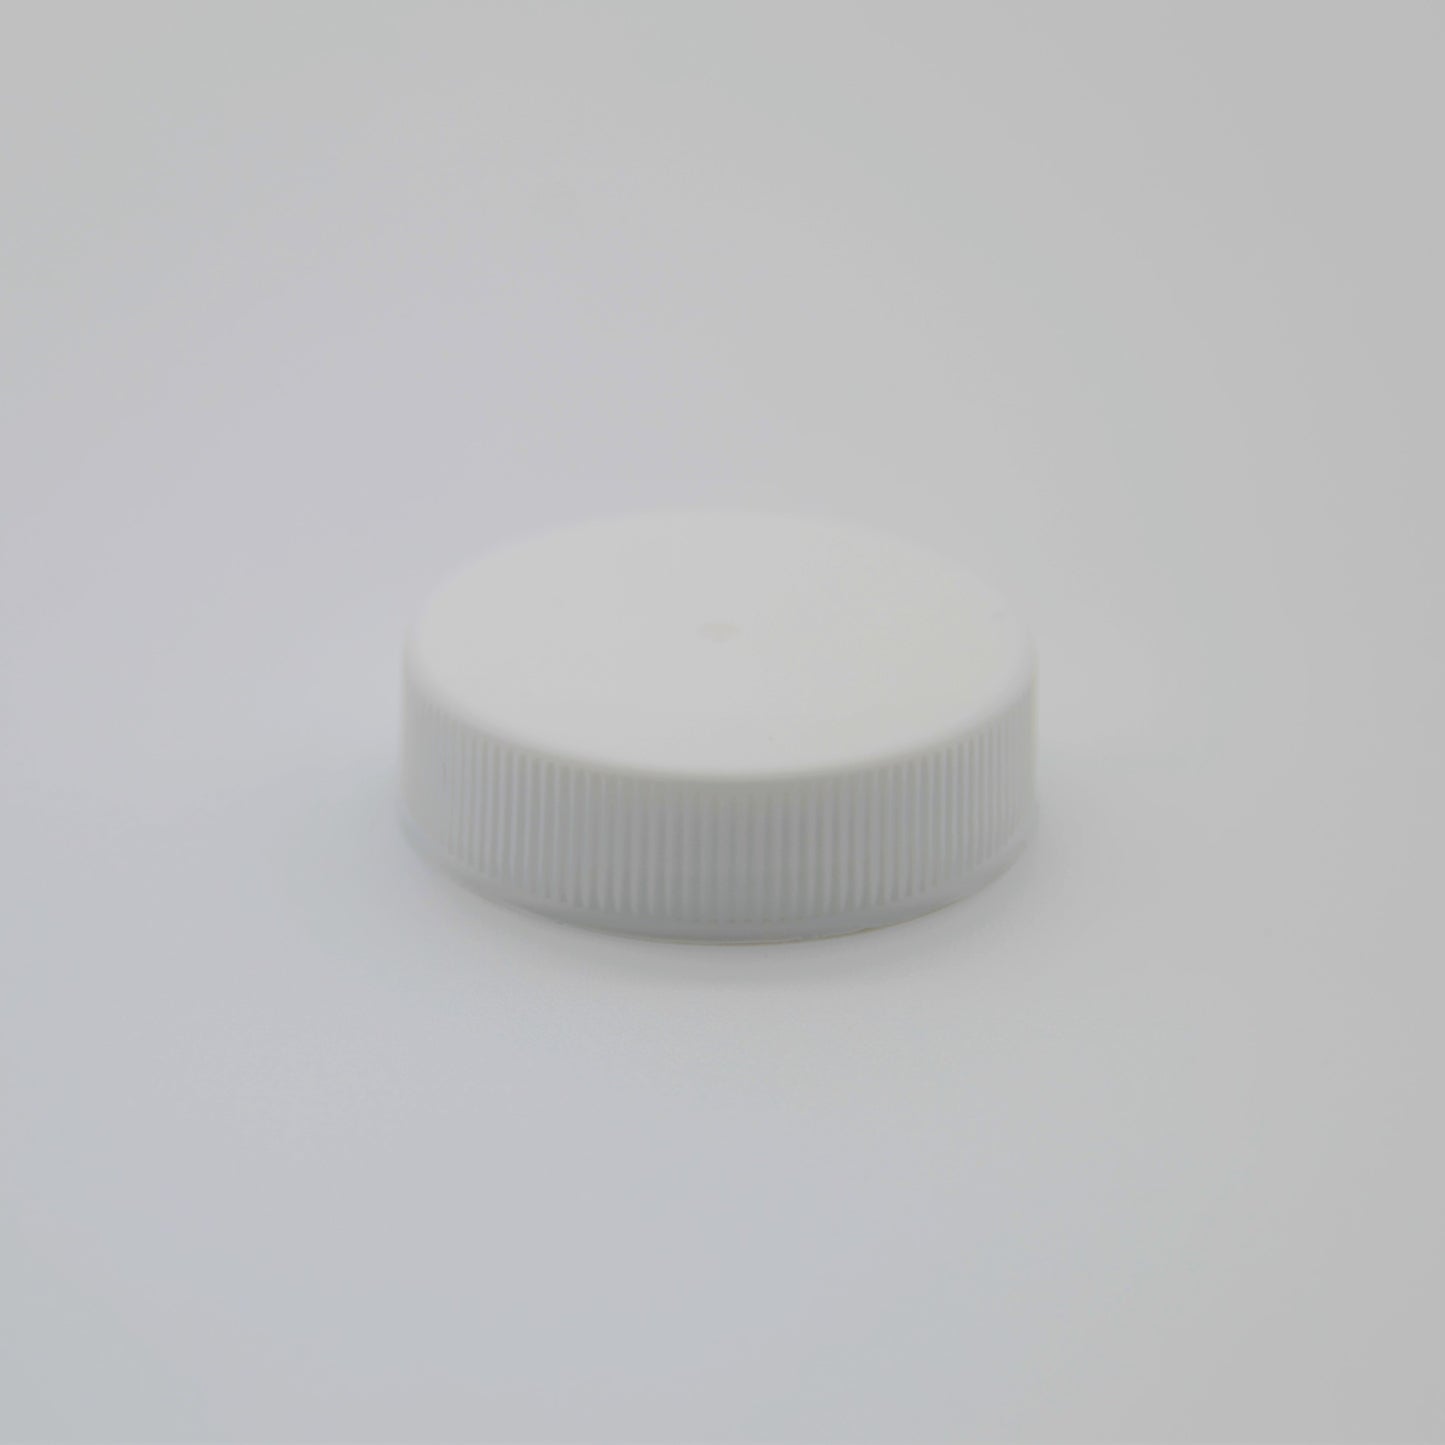 White Plastic Cap w/ Foam Liner 38/400